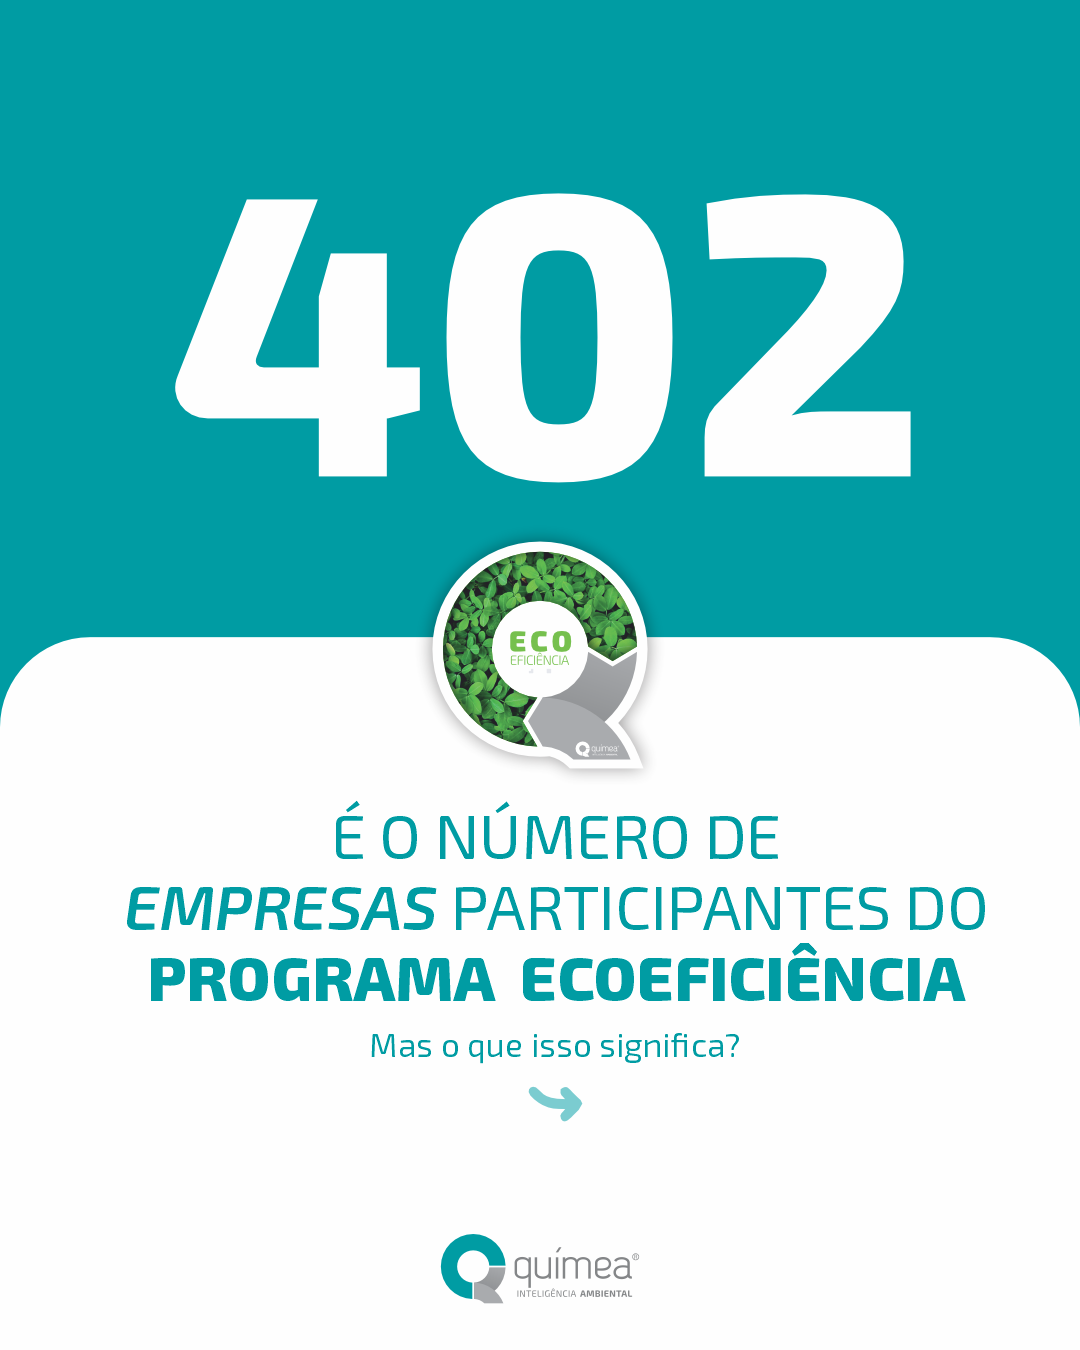 402 empresas participantes do Programa Ecoeficiência